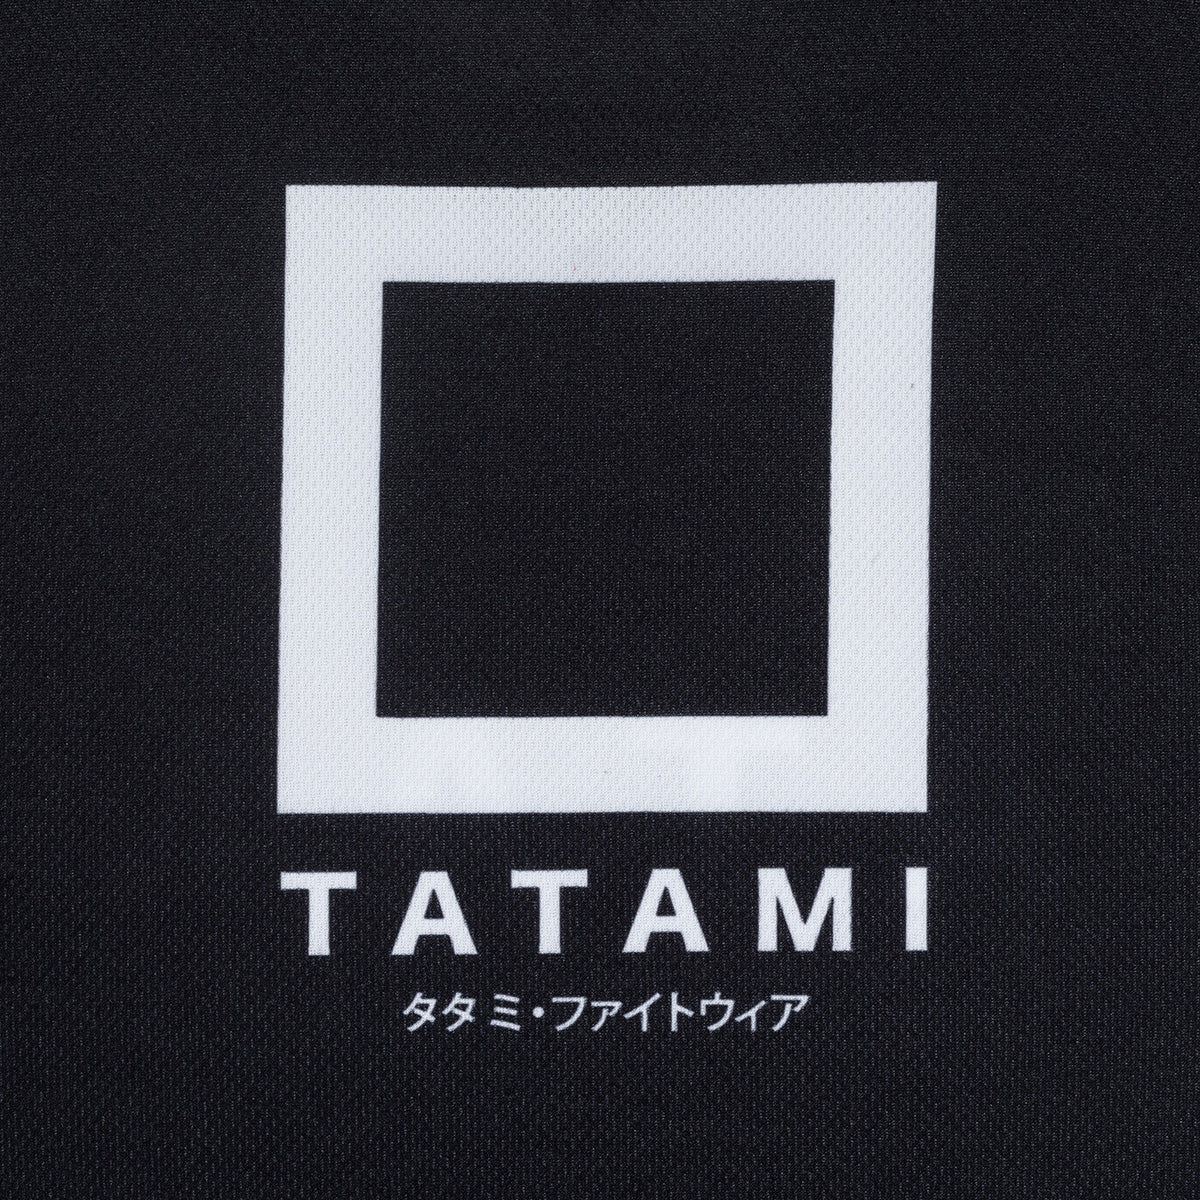 Tatami Fightwear Katakana Tank Top - Black Tatami Fightwear